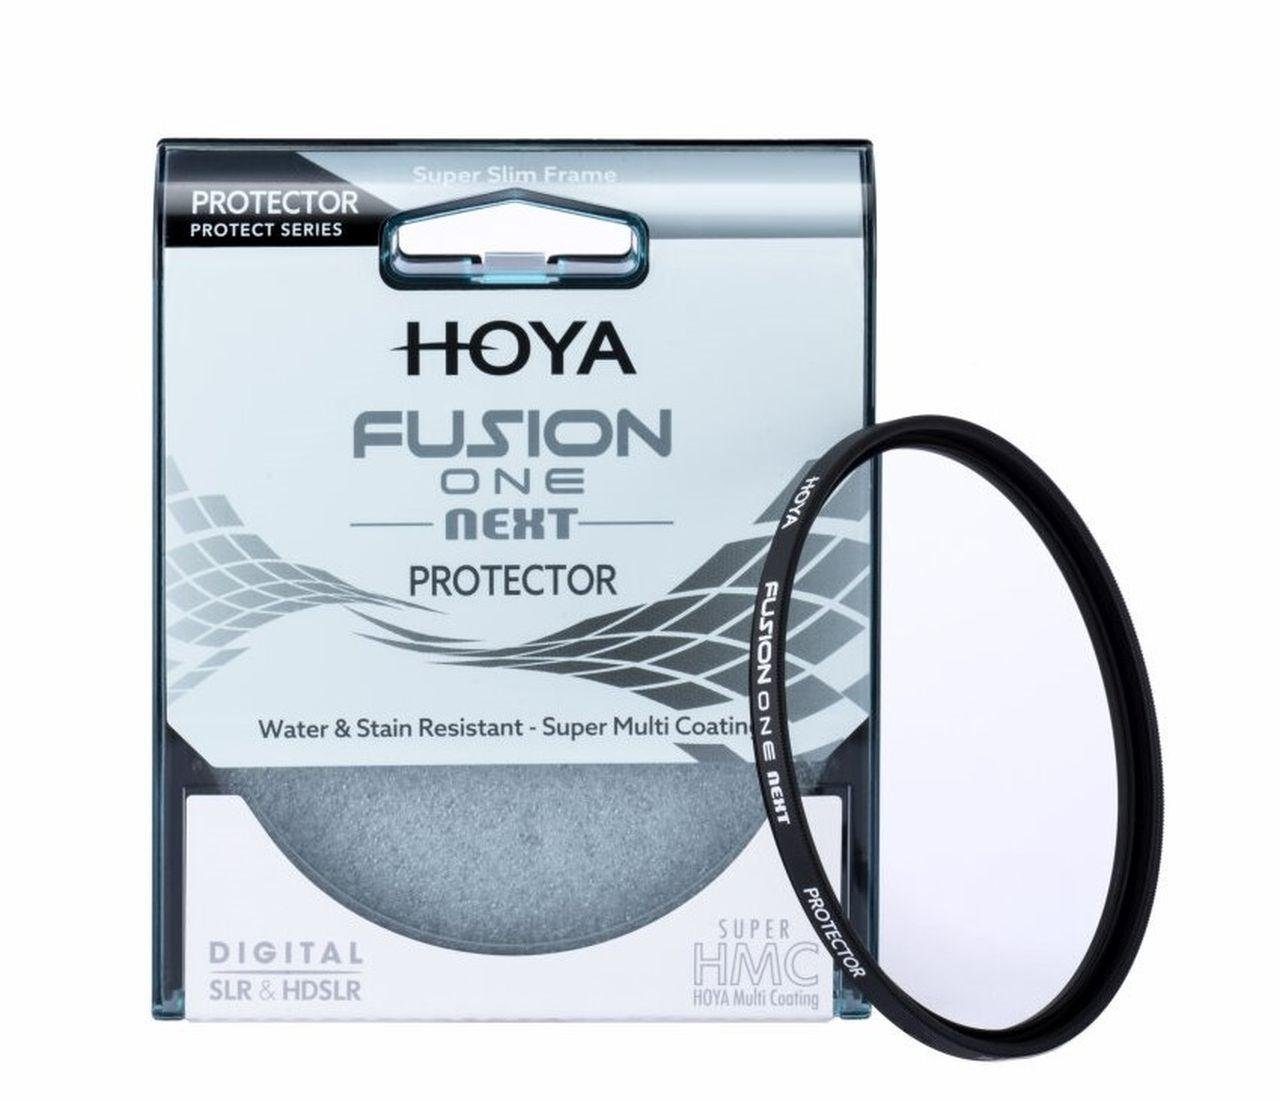 Hoya Fusion ONE Next Protector 46mm Objektivzubehör | Objektivfilter